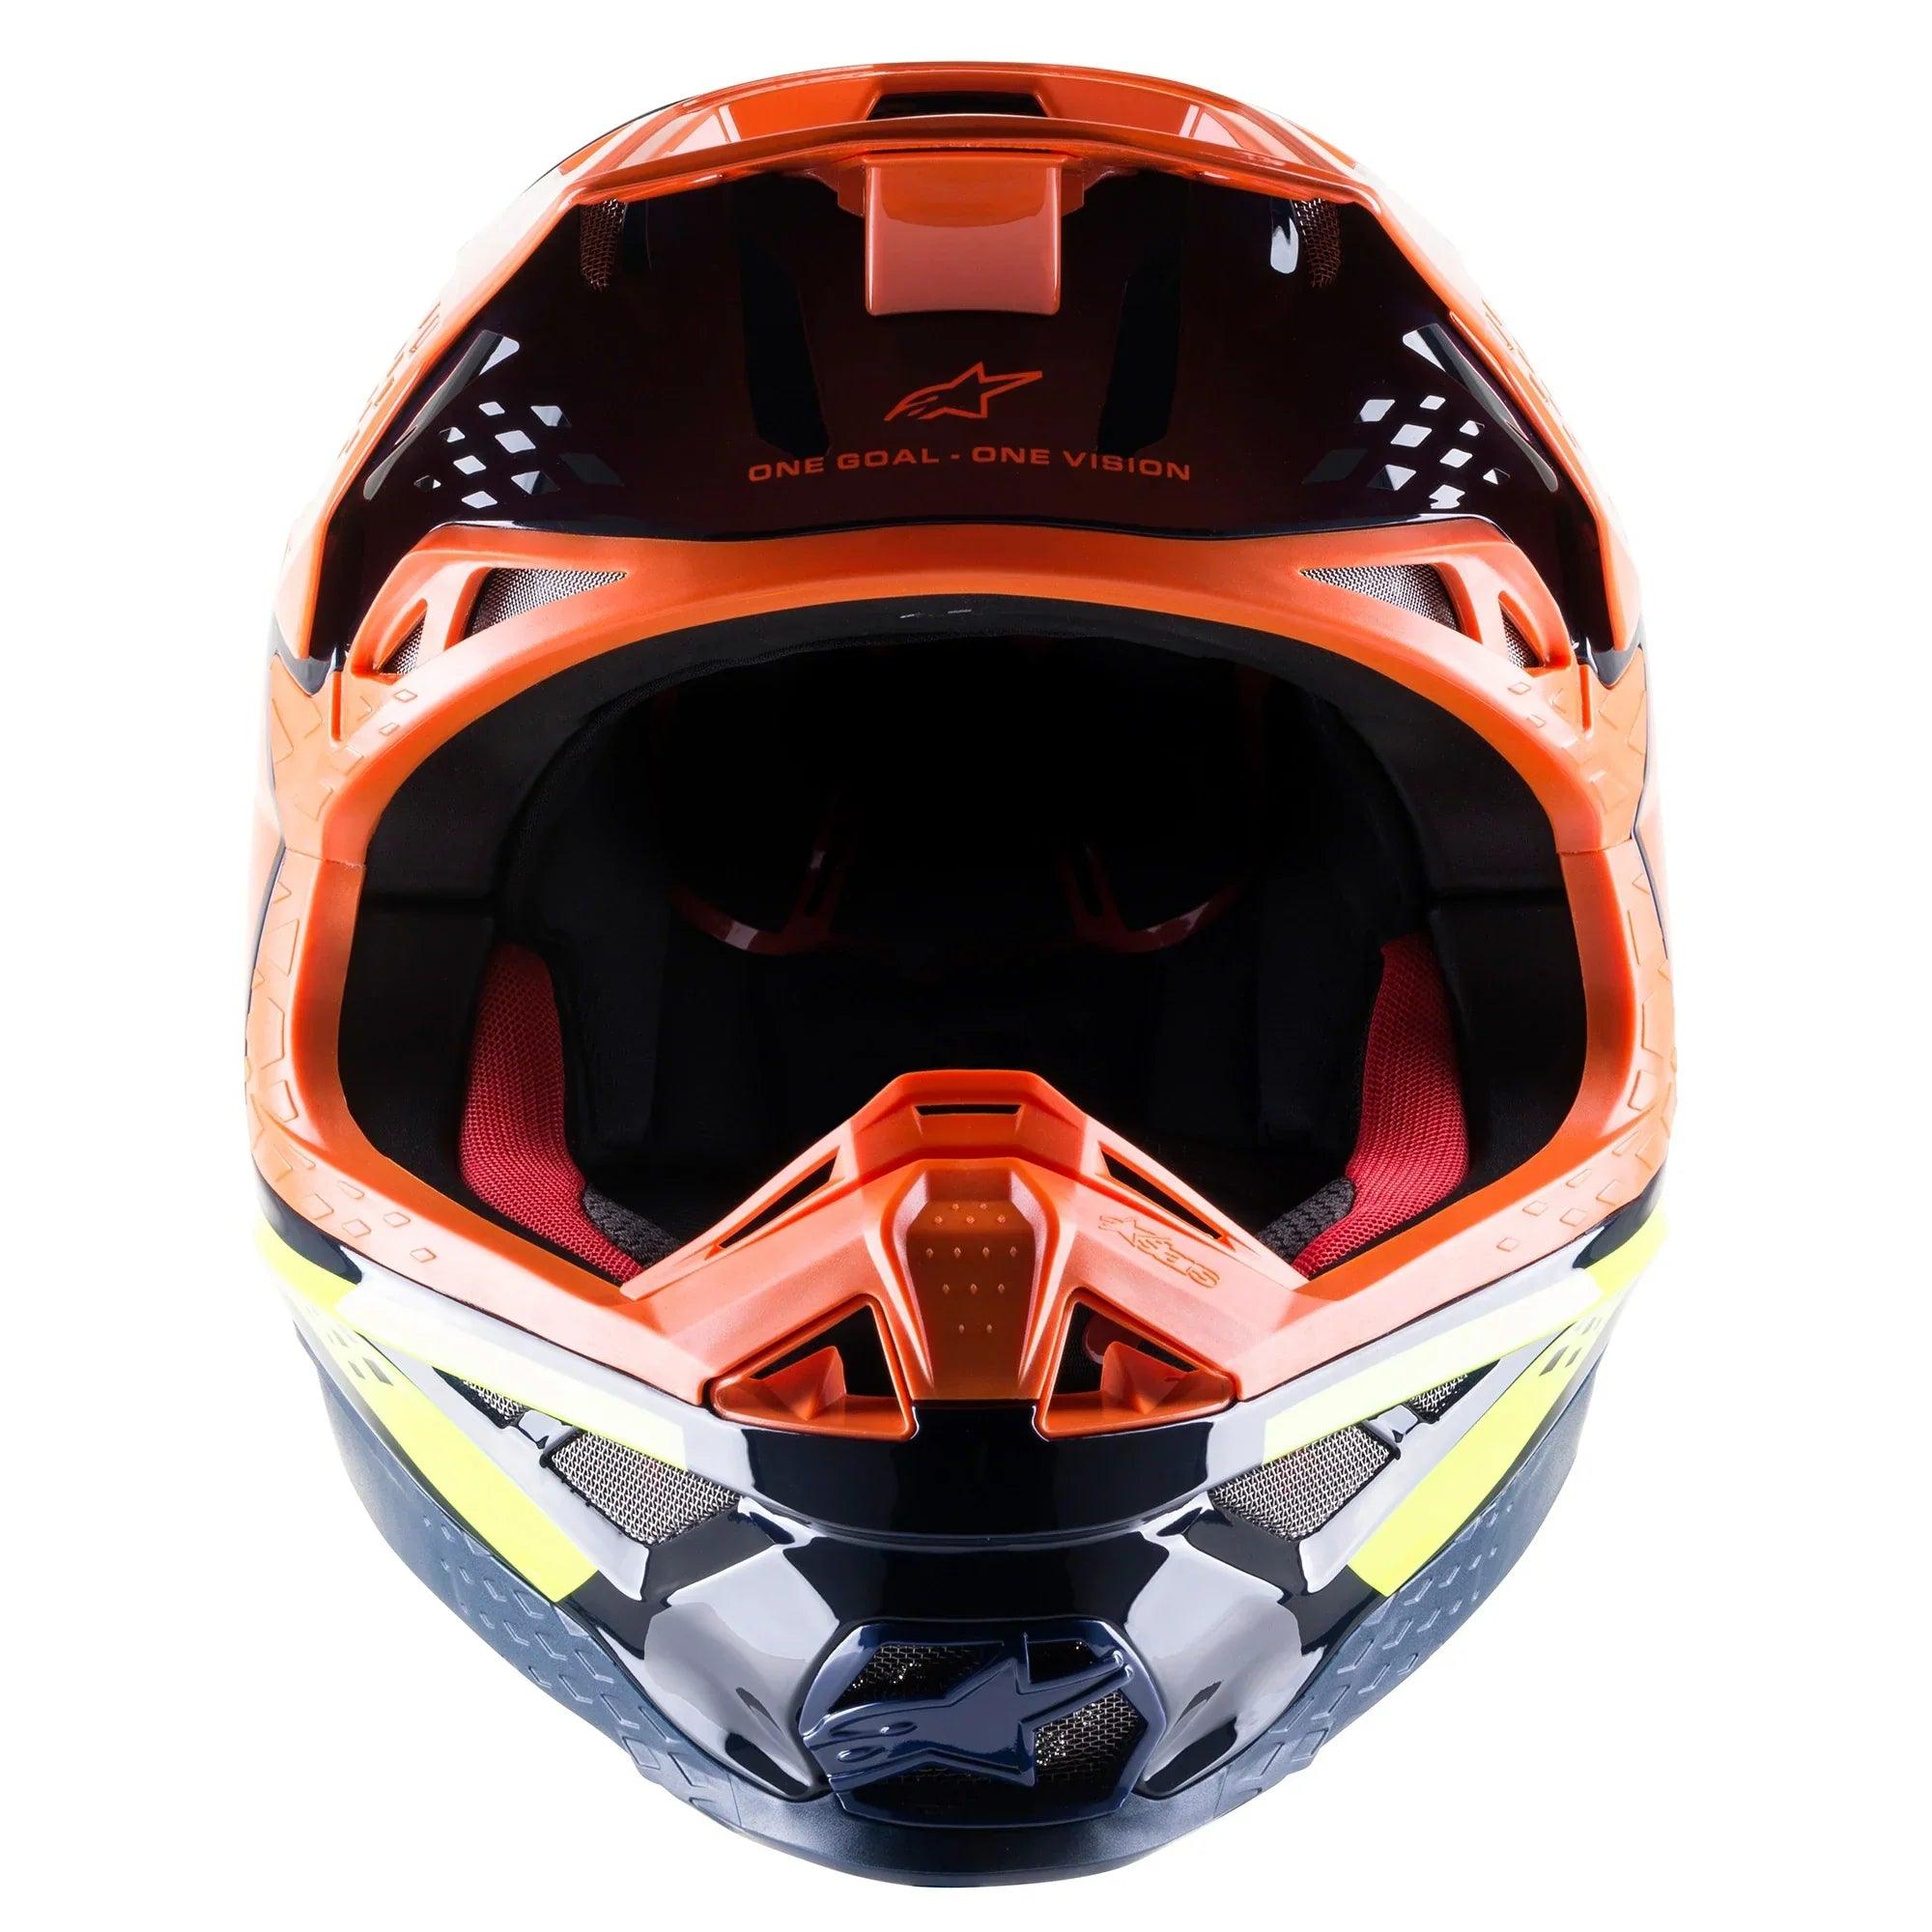 Alpinestars Supertech M8 Factory Dark Blue/Orange/Yellow Fluo Helmet